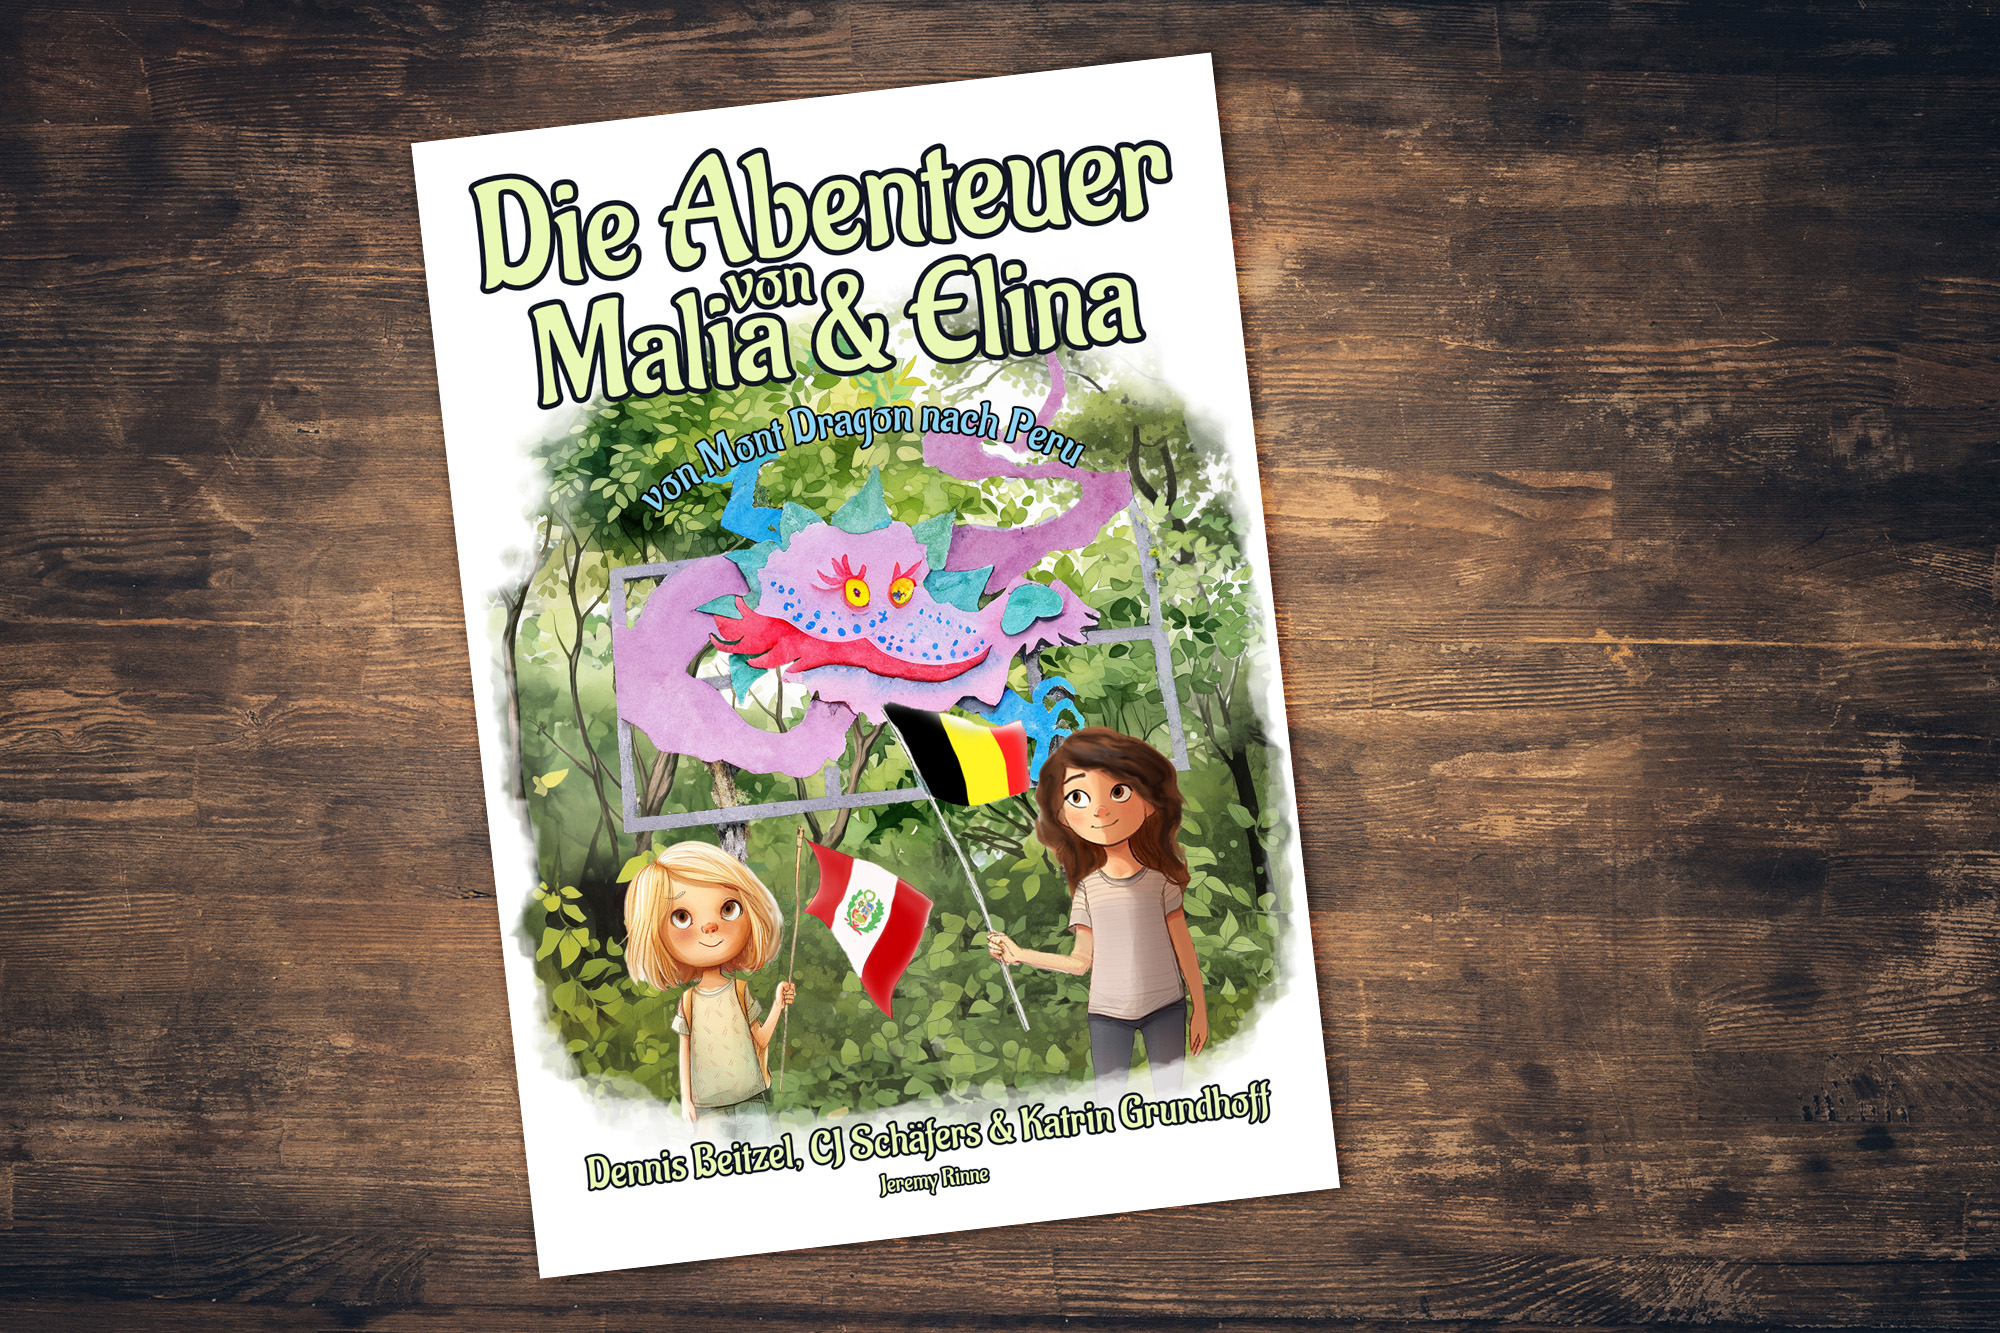 "Die Abenteuer von Malia und Elina - von Mont Dragon nach Peru" von Dennis Beitzel, CJ Schäfers und Katrin Grundhoff